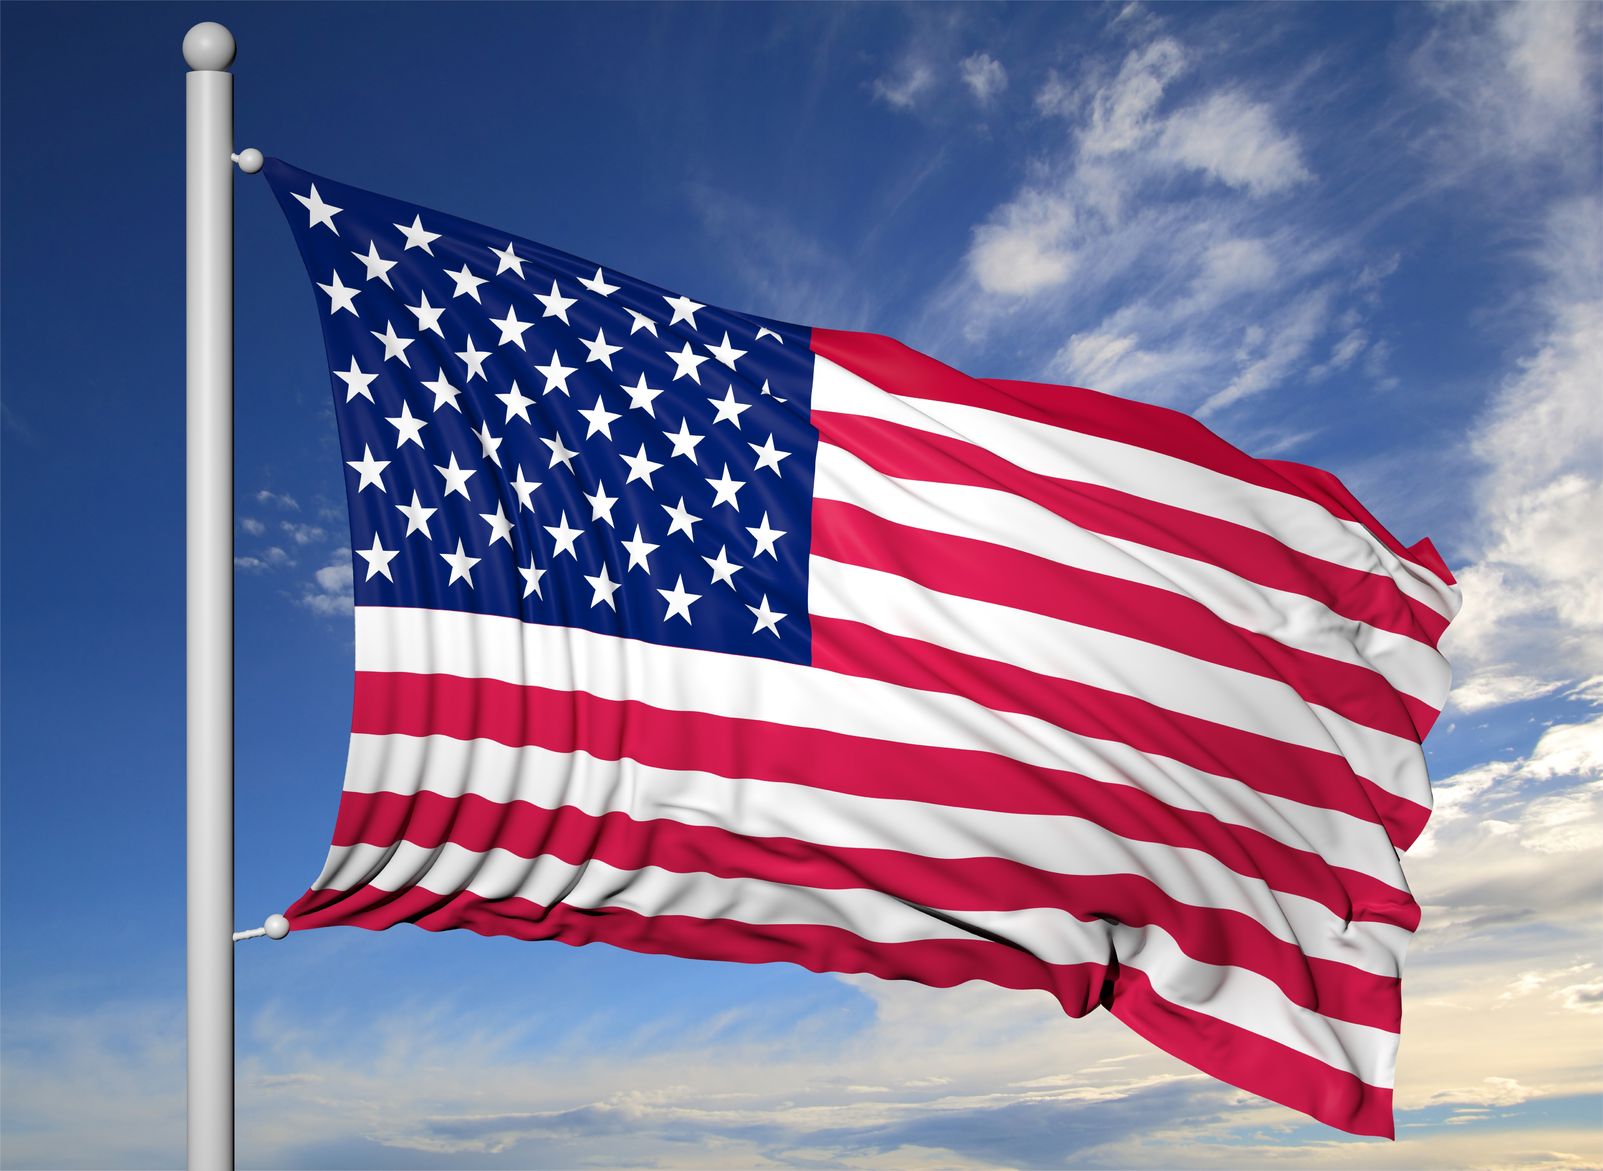 AmericanFlag-1765824.jpg